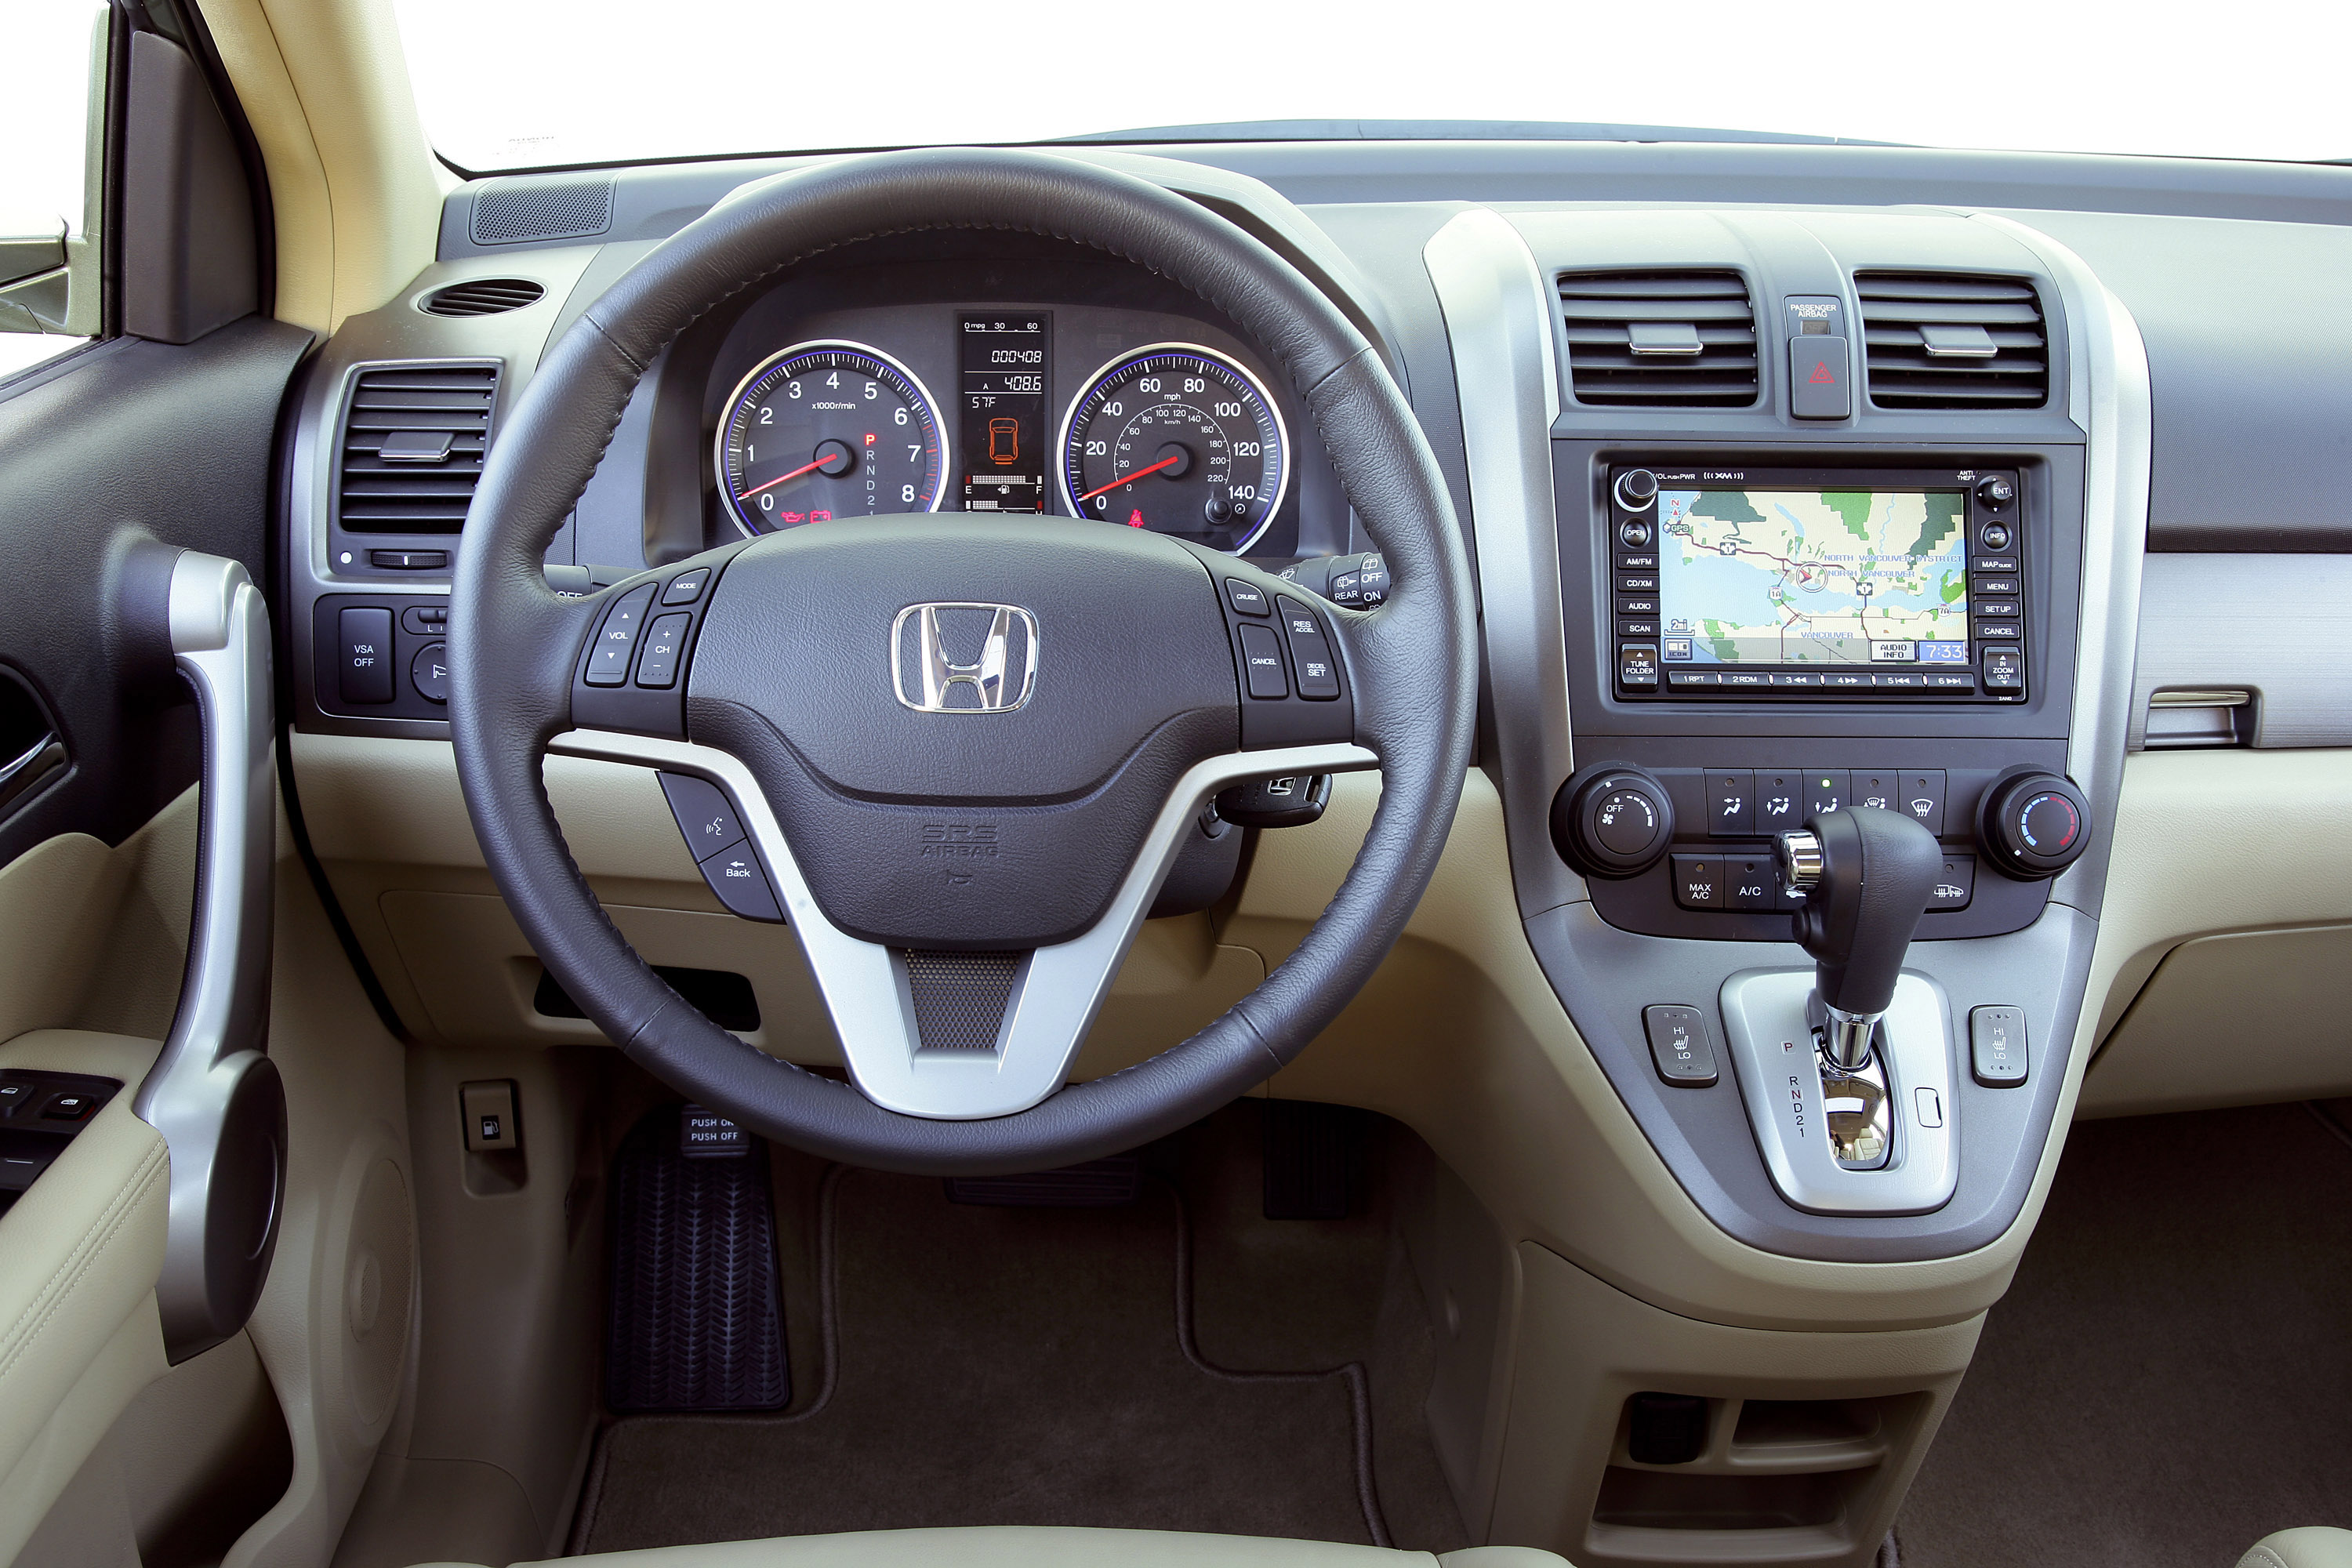 Honda cr панель. Honda CRV 2007. Хонда CRV 2007 салон. Honda CR-V 2007 Interior. Honda CR-V 2007 салон.